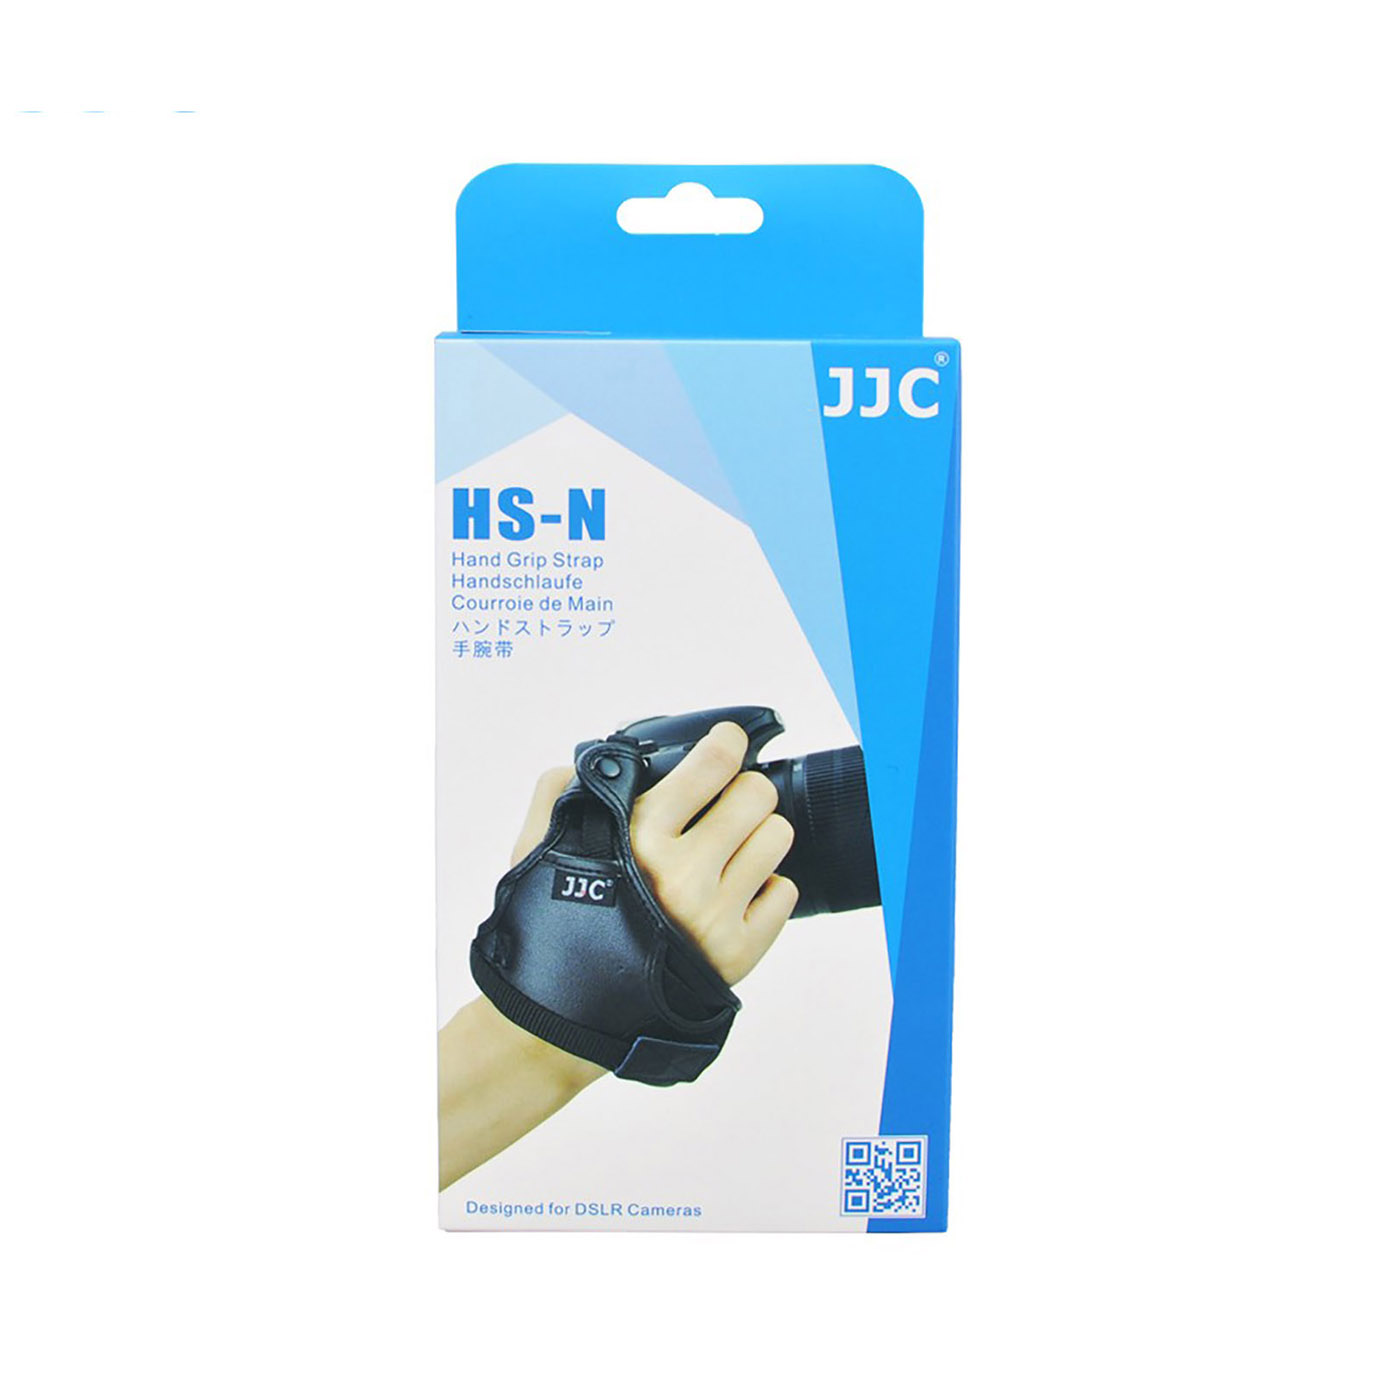 JJC Handschlaufe für DSLR Kameras mit sicherem 3-Punkt Halterung